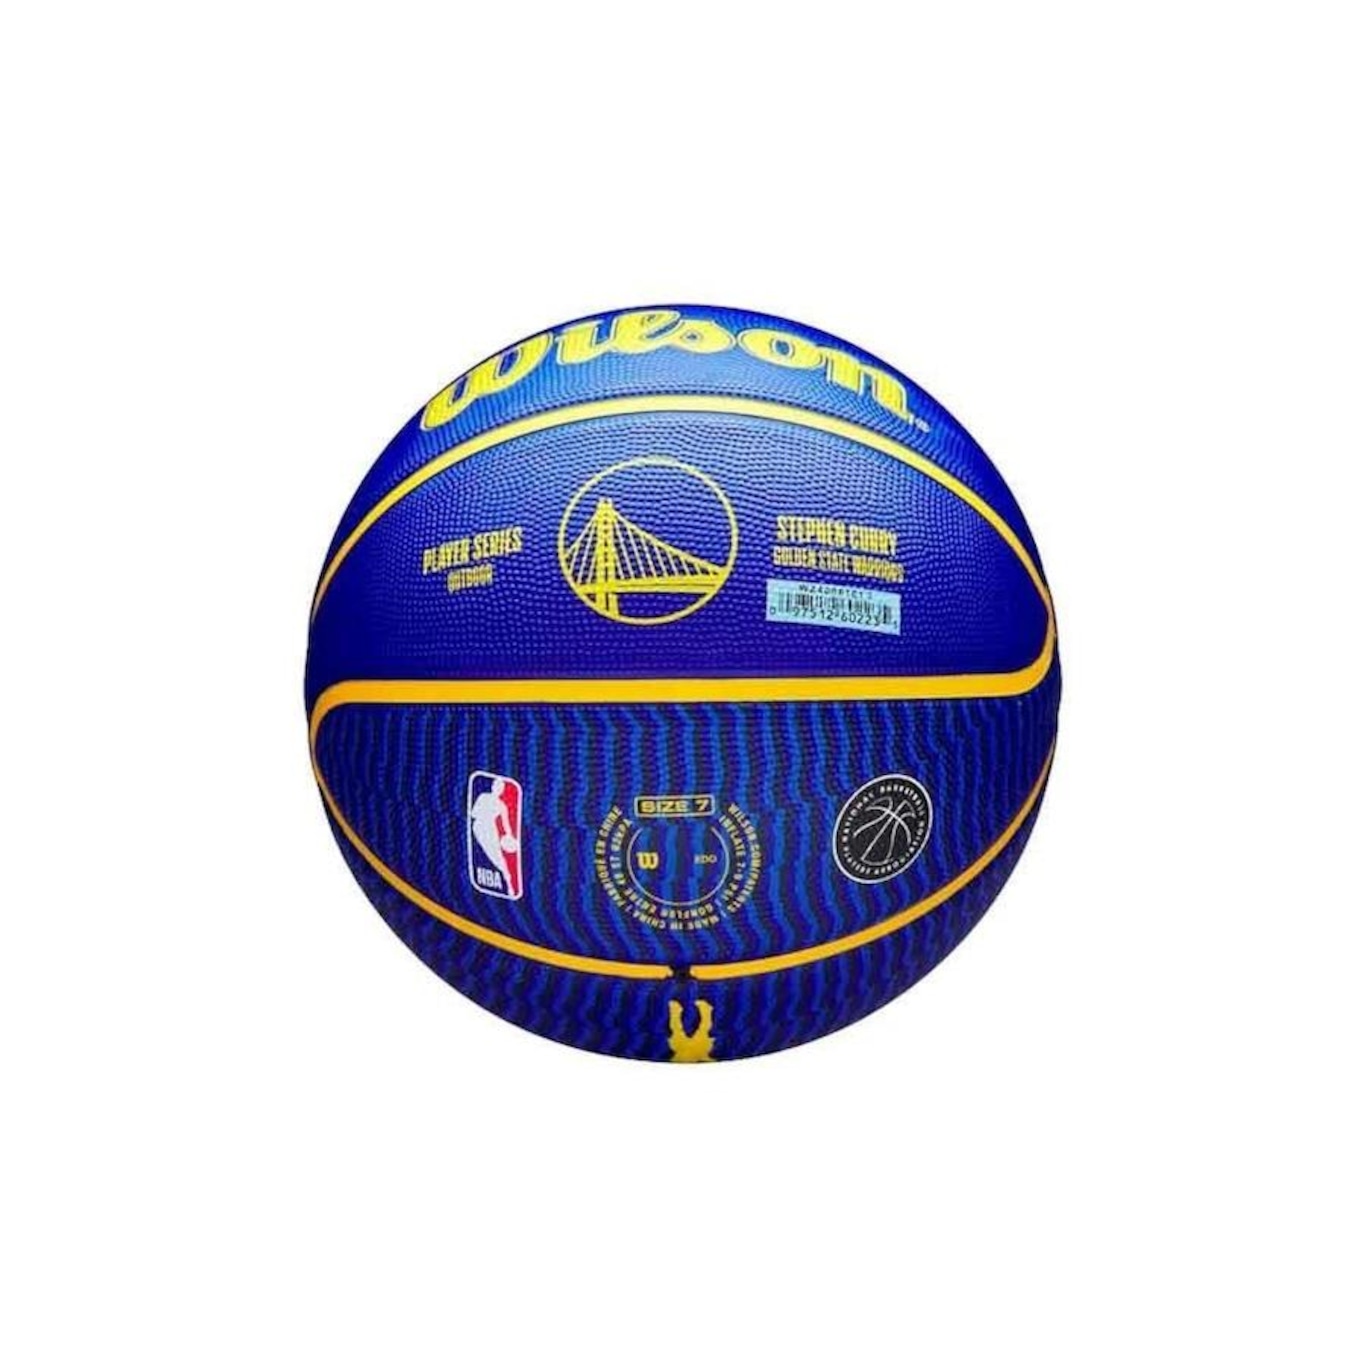 Bola de Basquete Wilson NBA Player Icon Stephen Curry Tam 7 